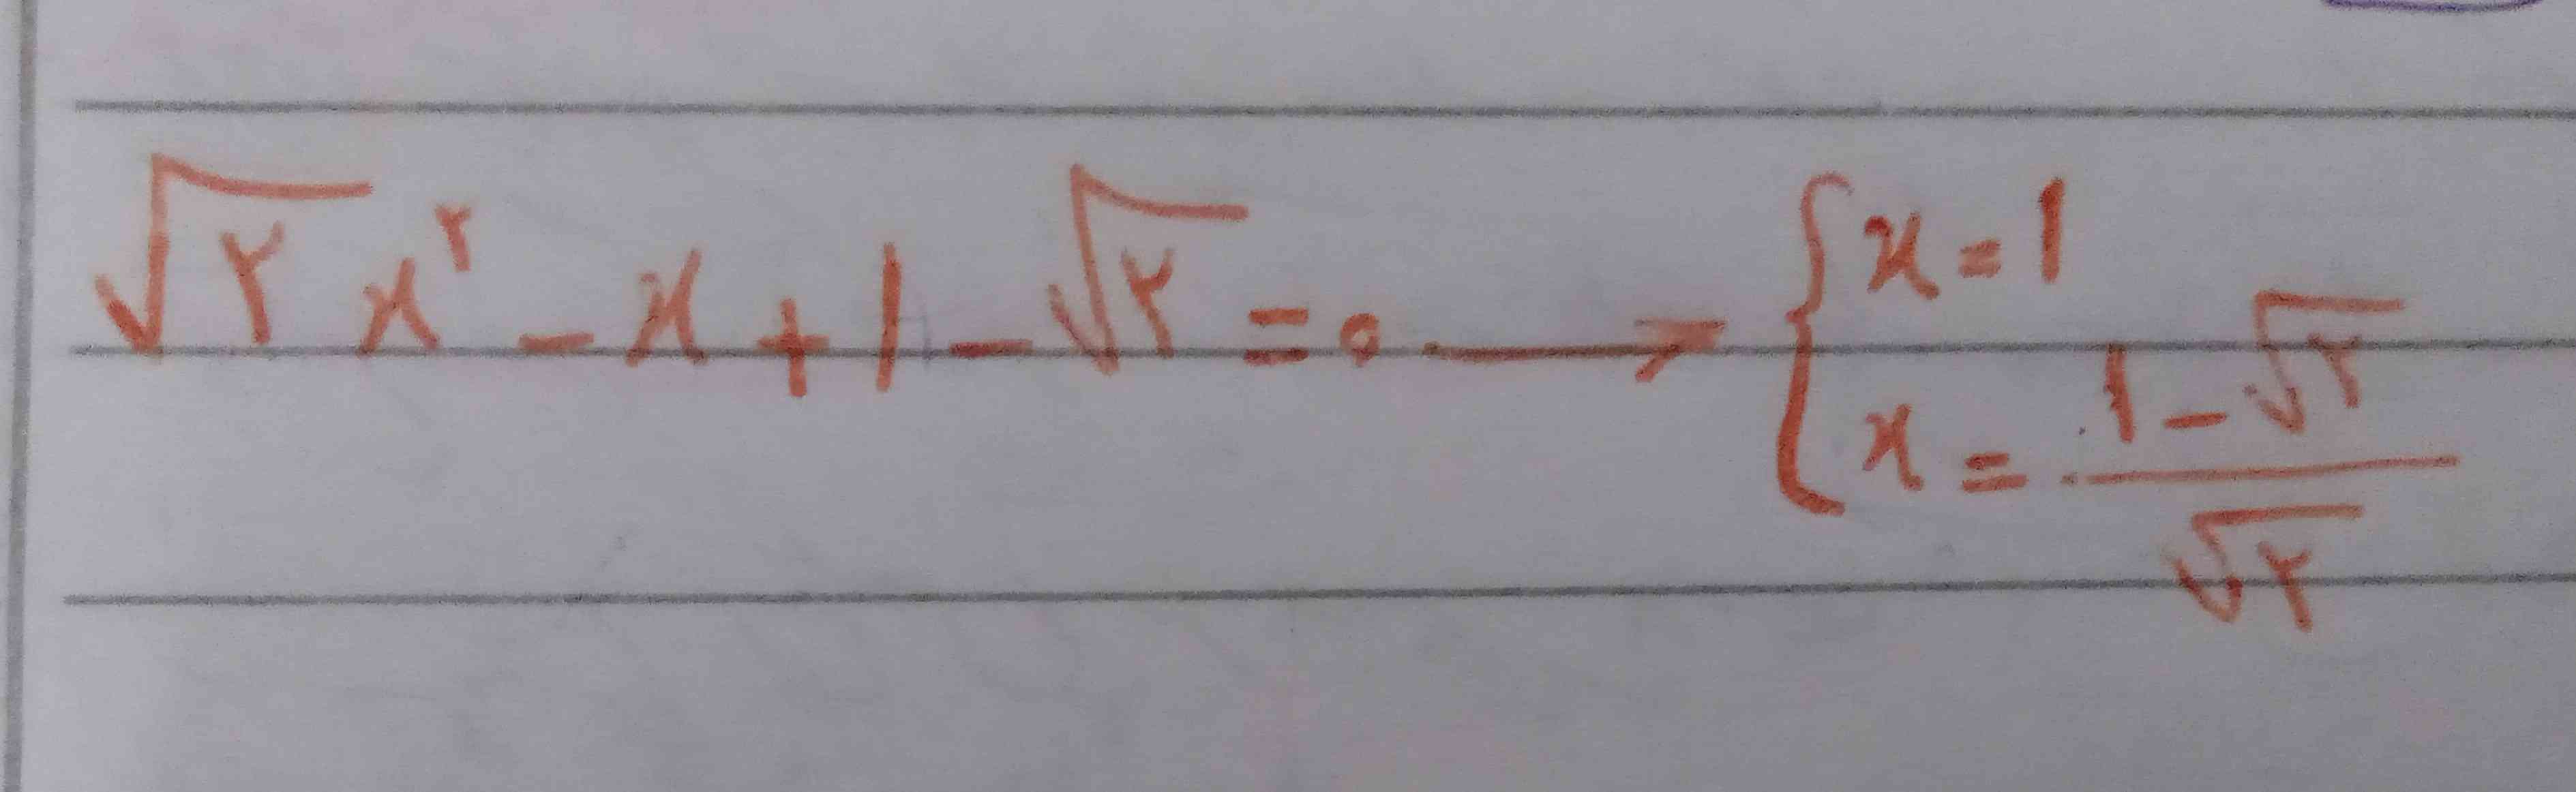 ریشه های این معادله رو درست بدست آوردم؟